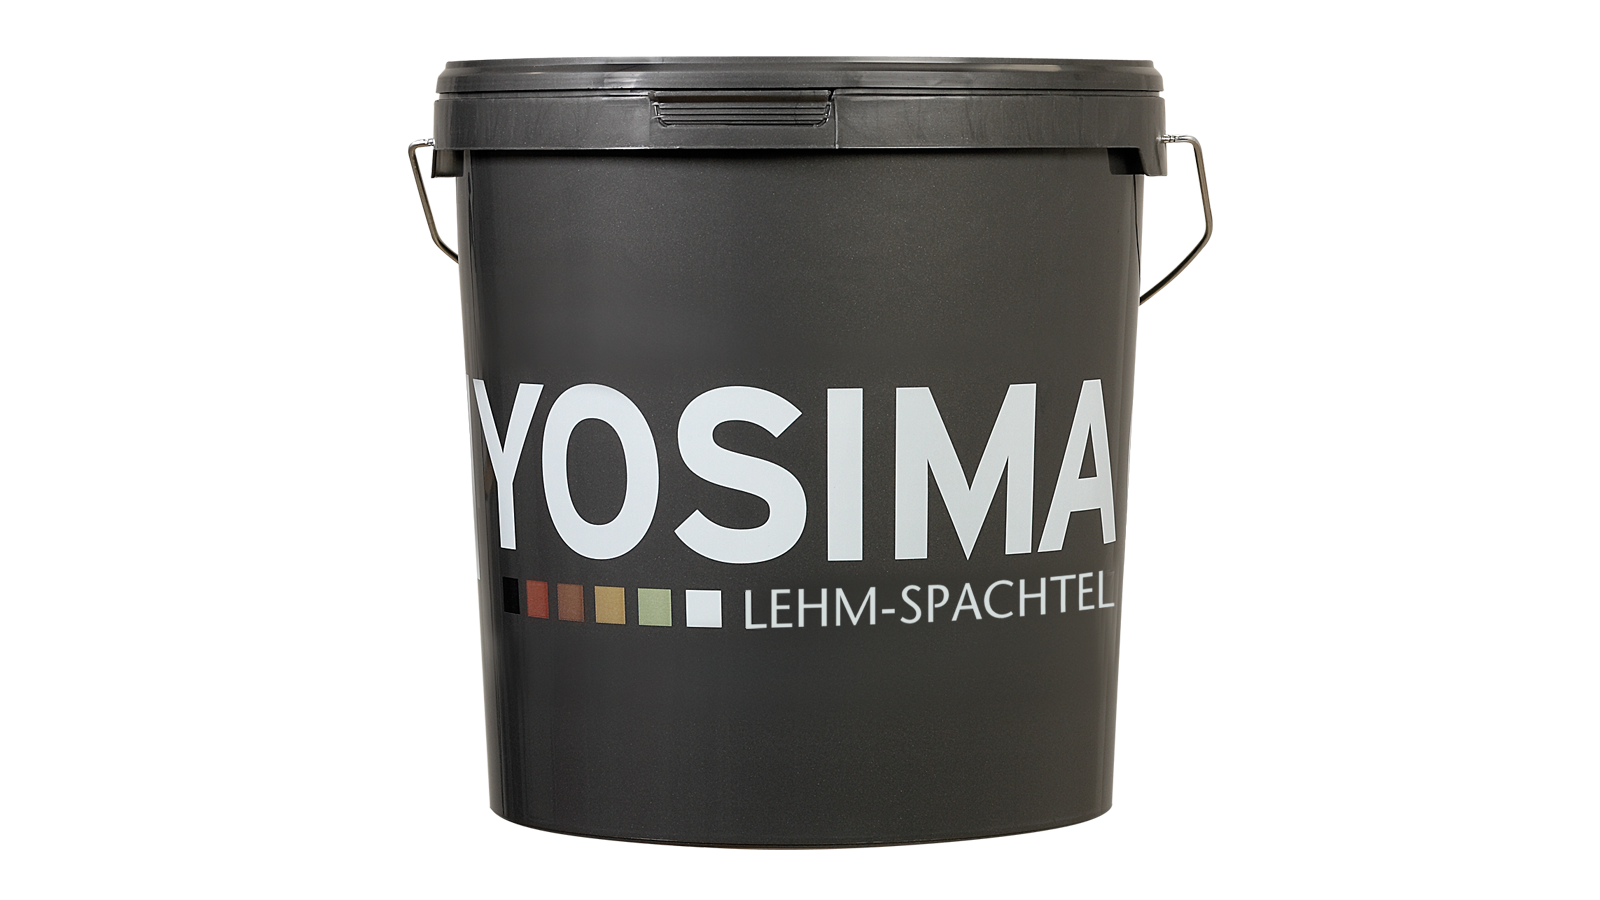 YOSIMA Lehm-Farbspachtel Farbraum Umbra-Natur